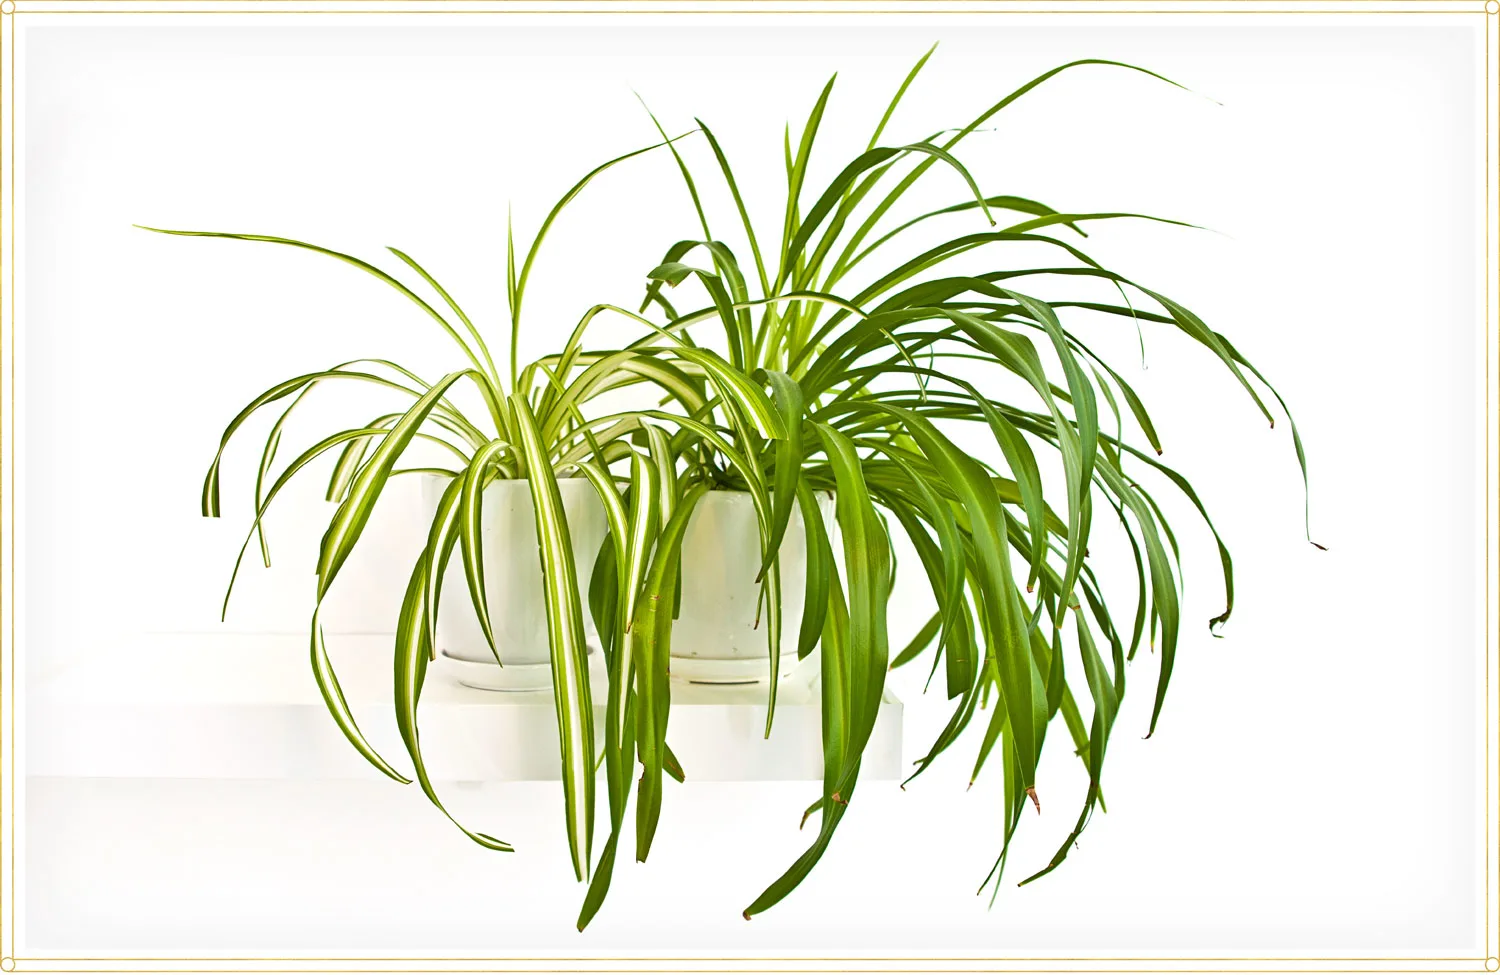 spider-plant-care-chlorophytum-comosum-variegatum